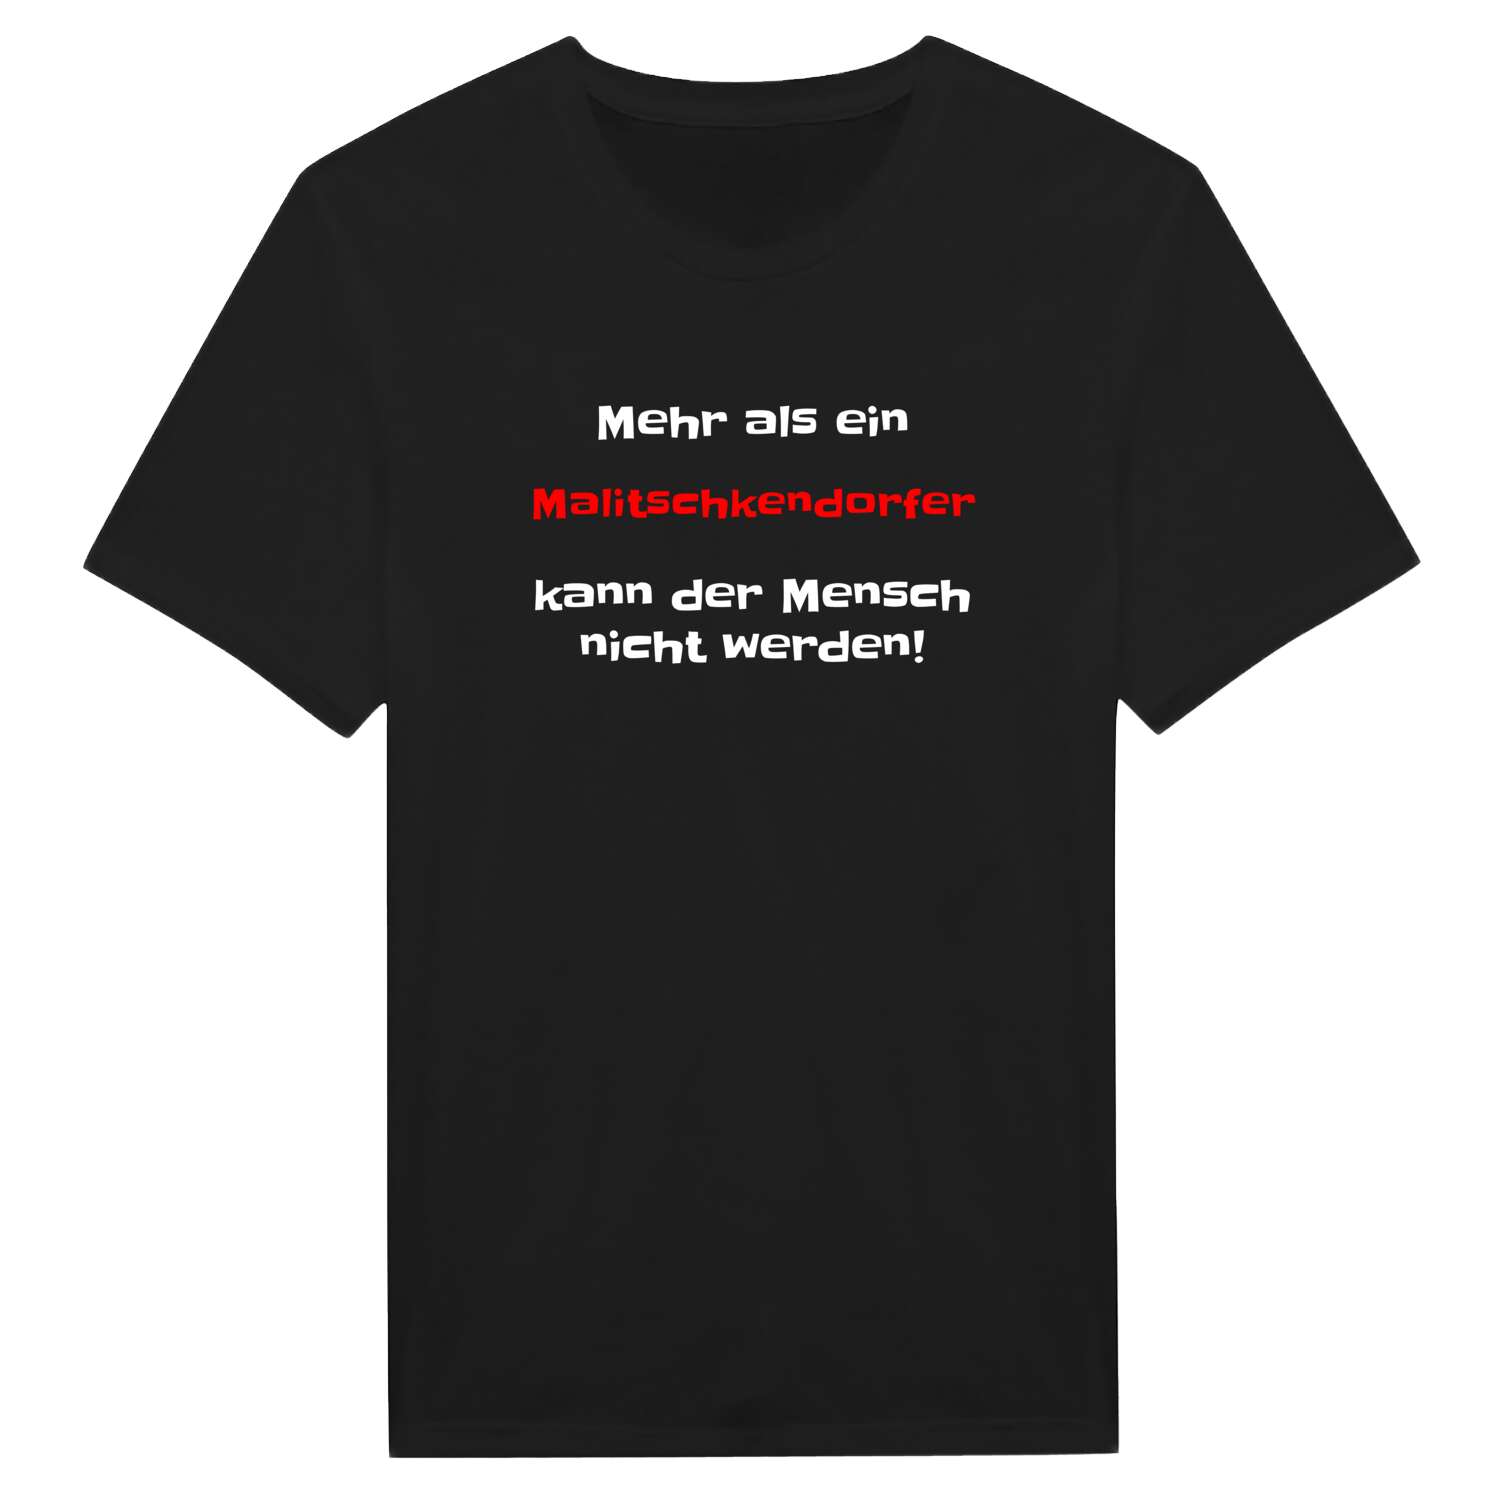 Malitschkendorf T-Shirt »Mehr als ein«